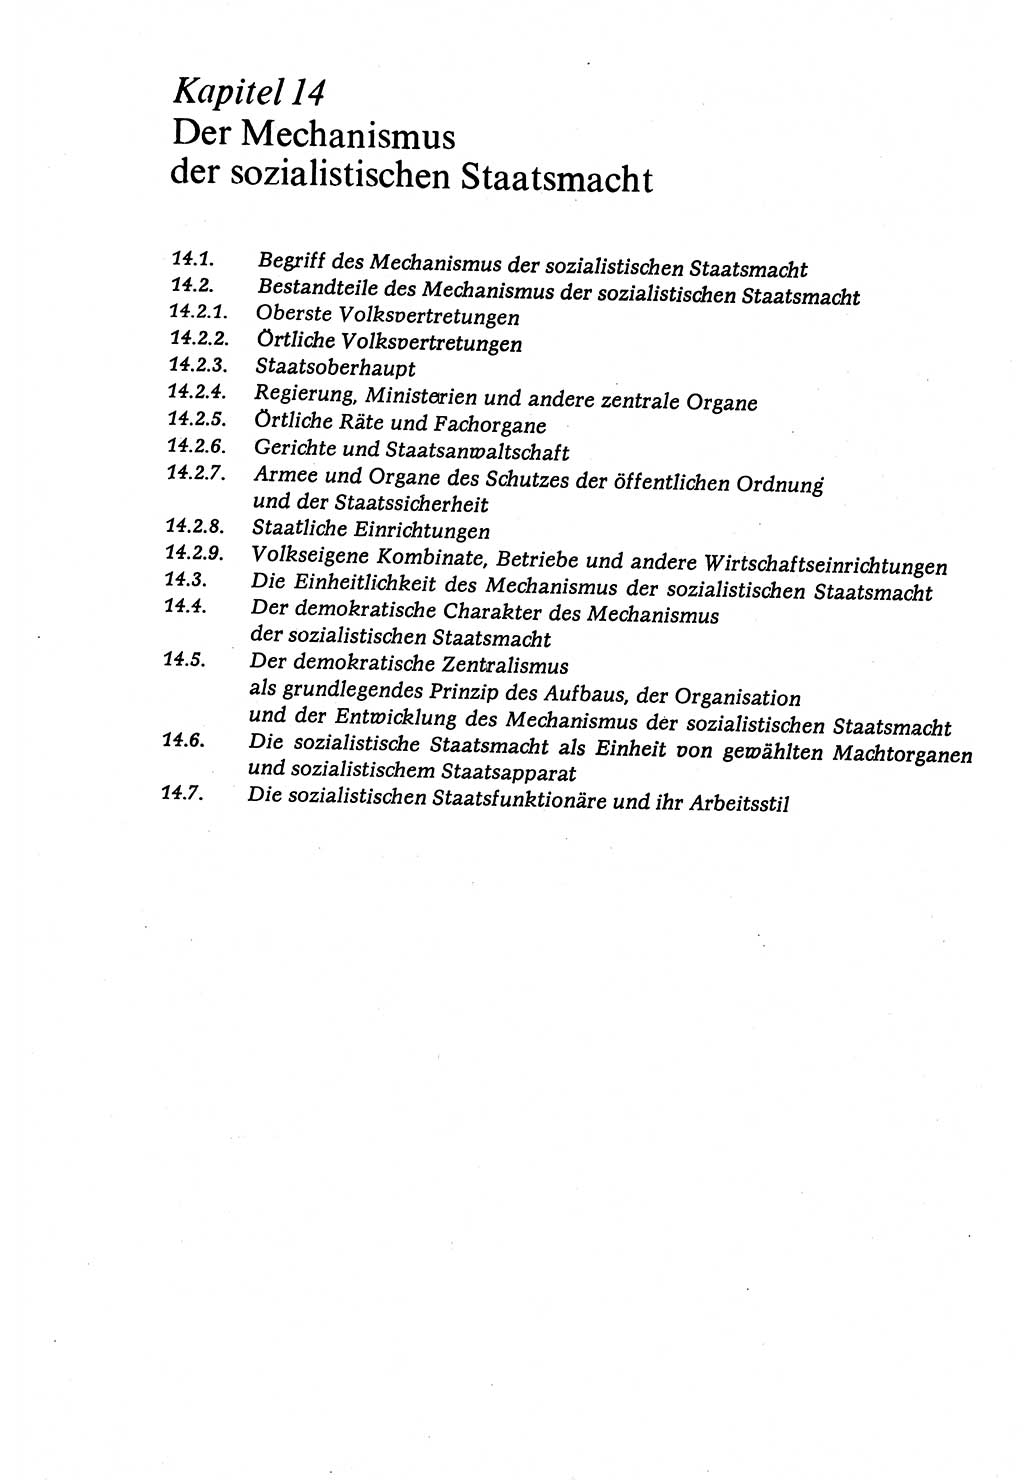 Marxistisch-leninistische (ML) Staats- und Rechtstheorie [Deutsche Demokratische Republik (DDR)], Lehrbuch 1980, Seite 356 (ML St.-R.-Th. DDR Lb. 1980, S. 356)